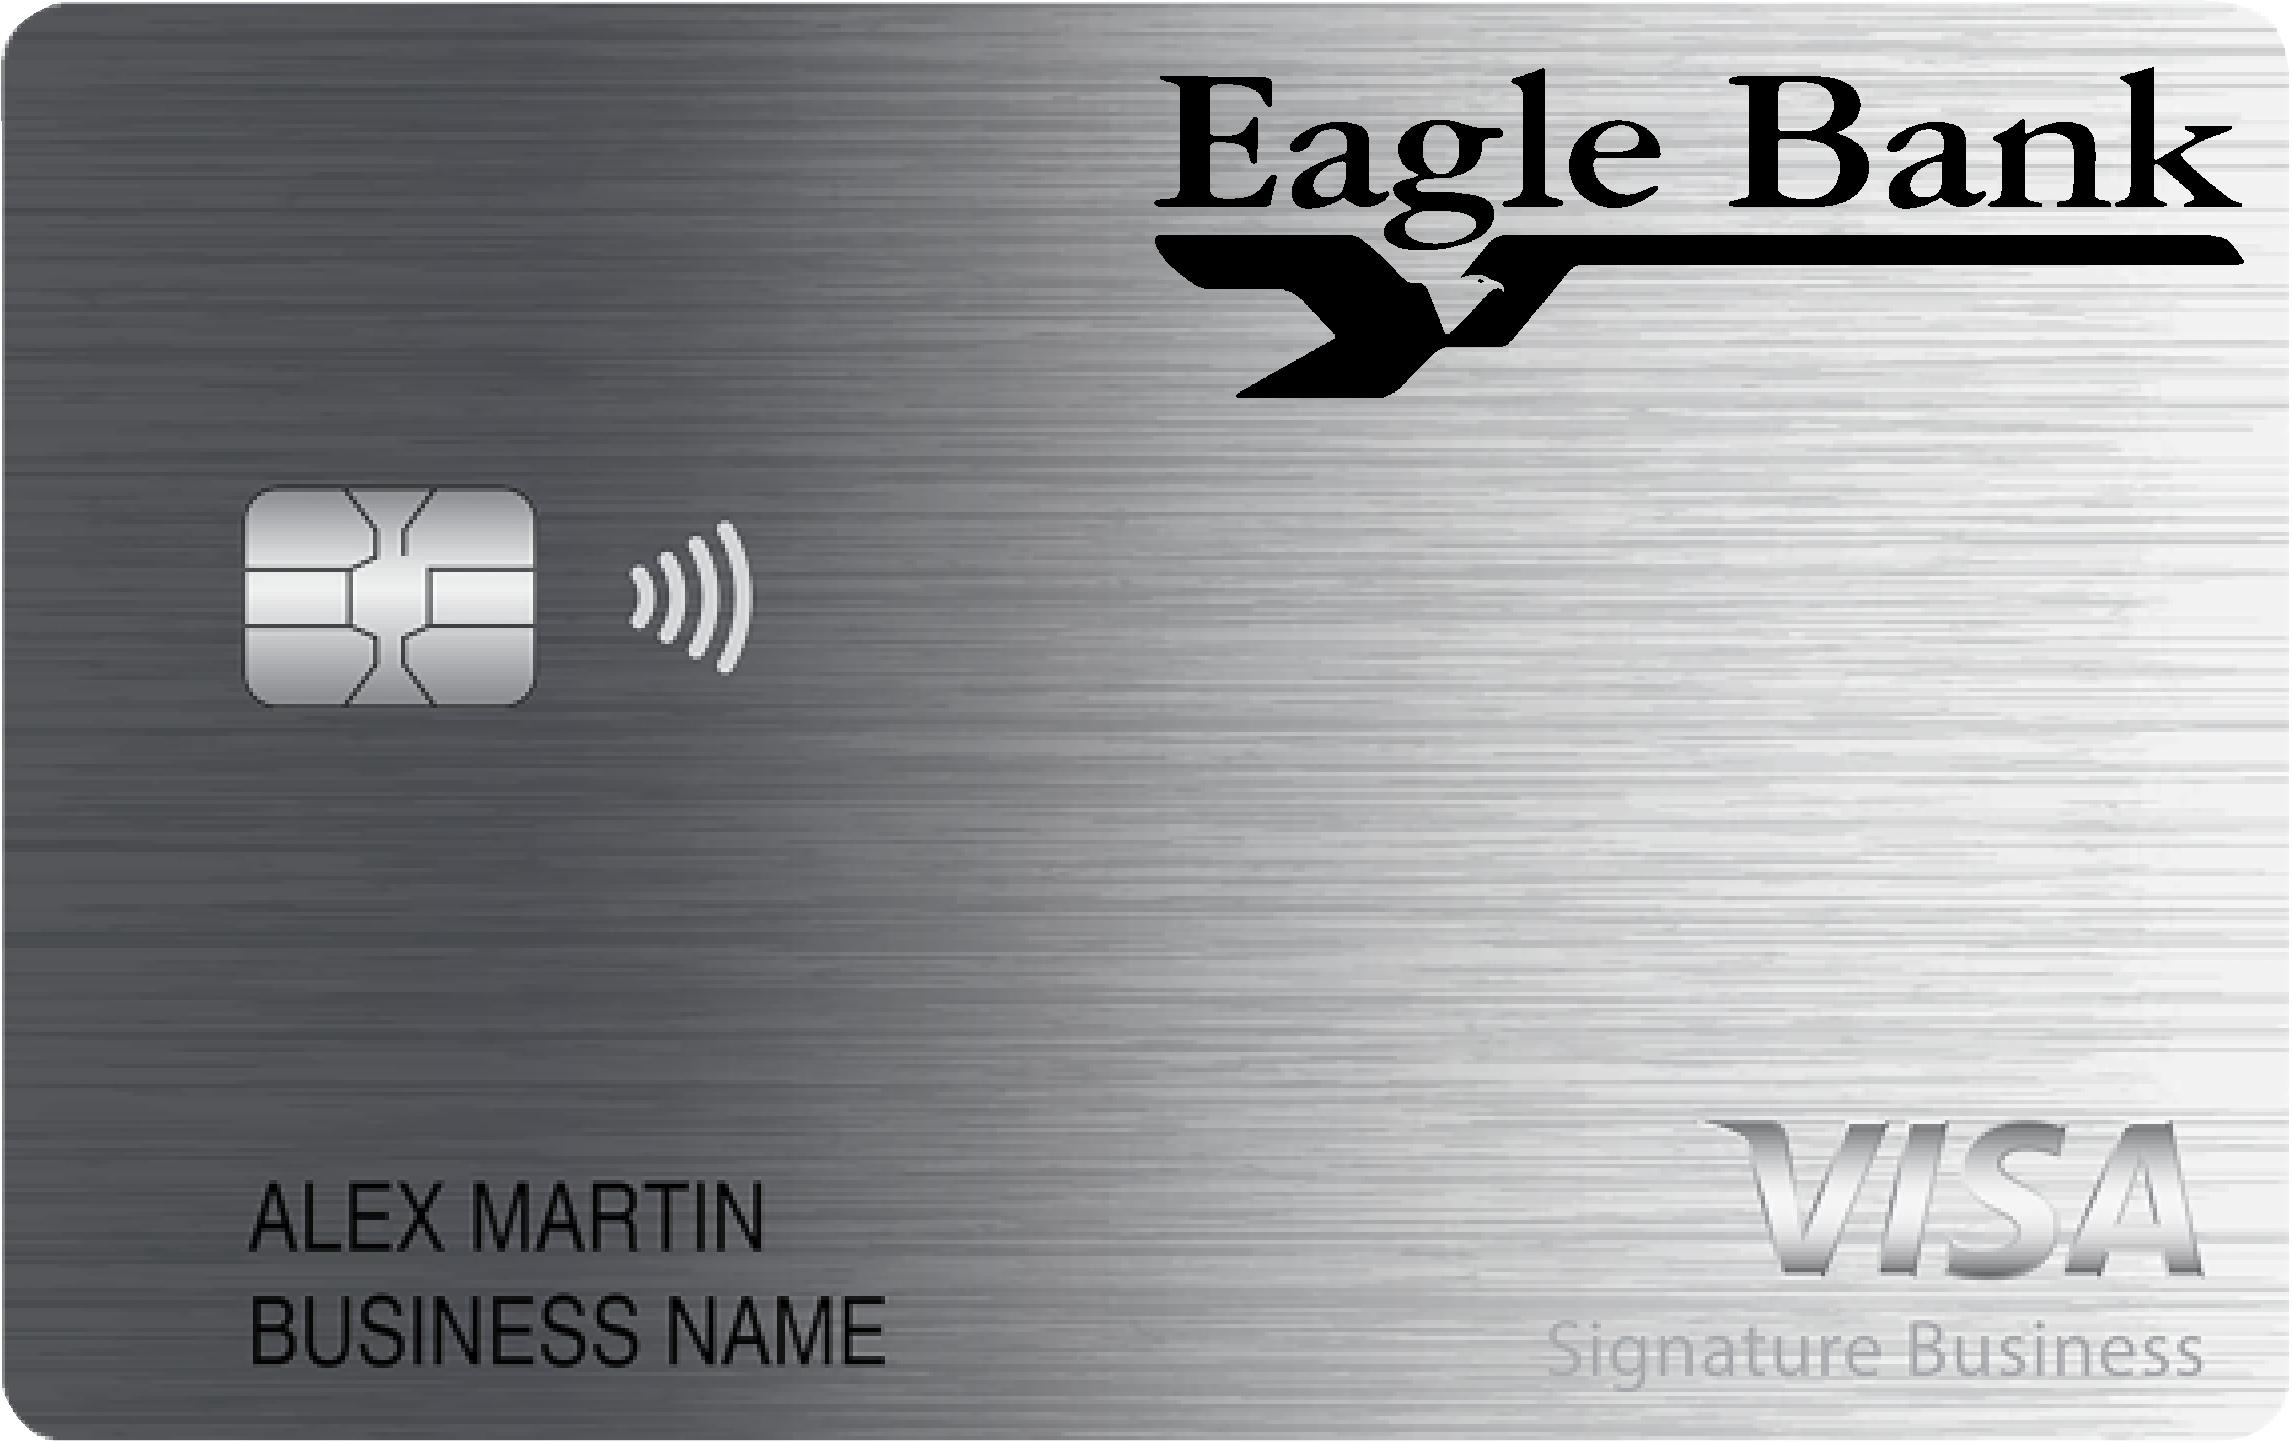 Eagle Bank Smart Business Rewards Card